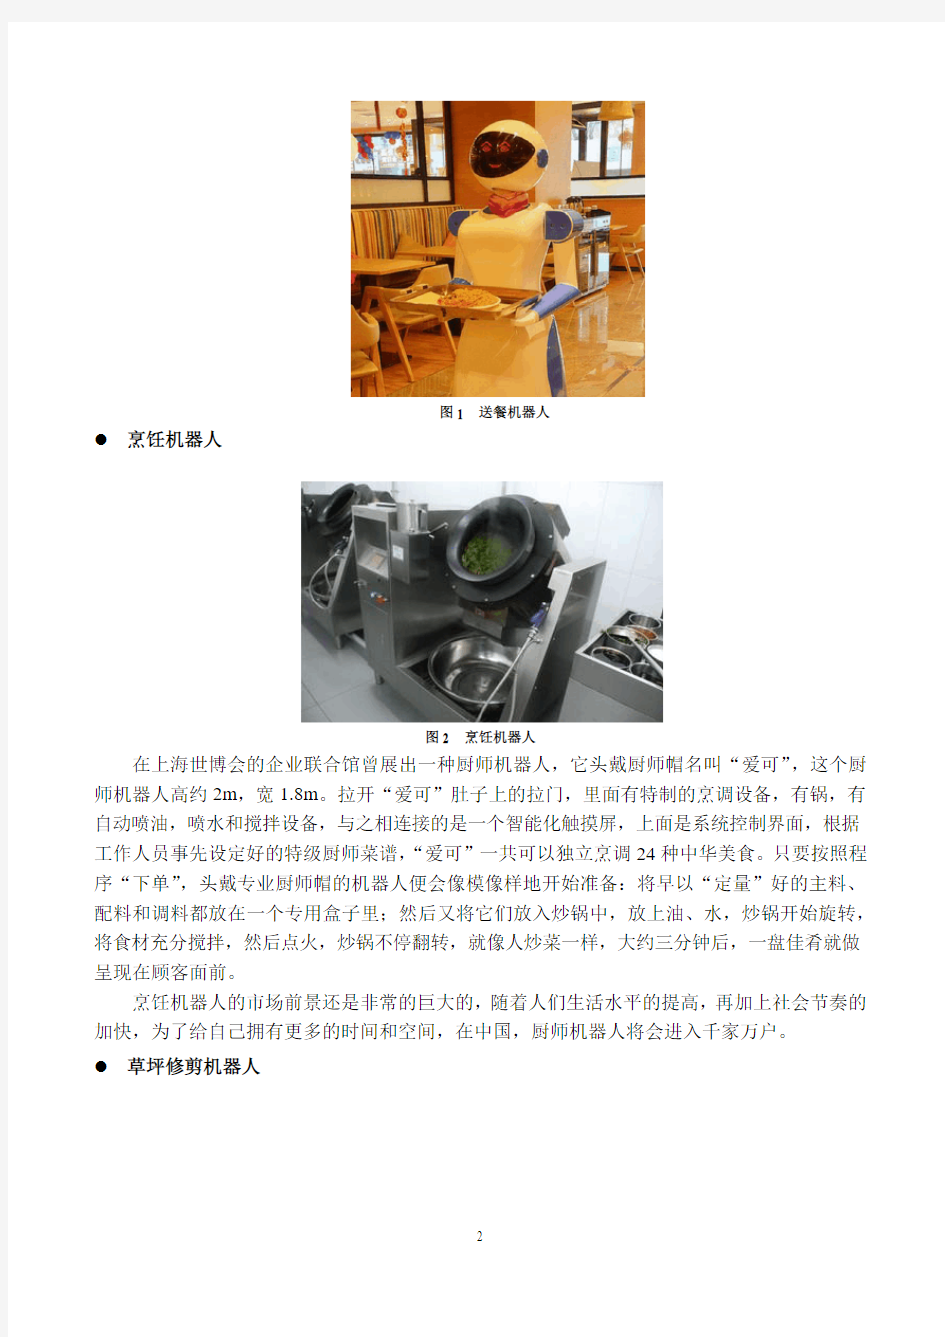 第十八届中国青少年机器人竞赛机器人创意比赛主题与规则